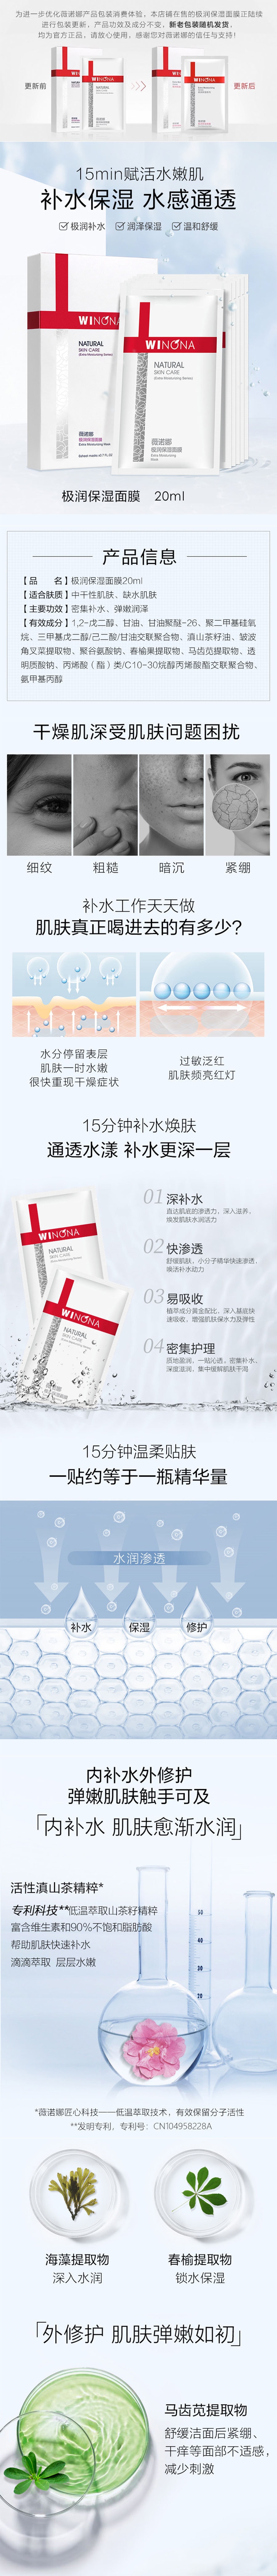 中国薇诺娜(WINONA) 极润保湿面膜20ml 敏感肌专用 舒缓修护 敏感肌补水保湿修护屏障舒缓滋润 拉新价 限量300份 